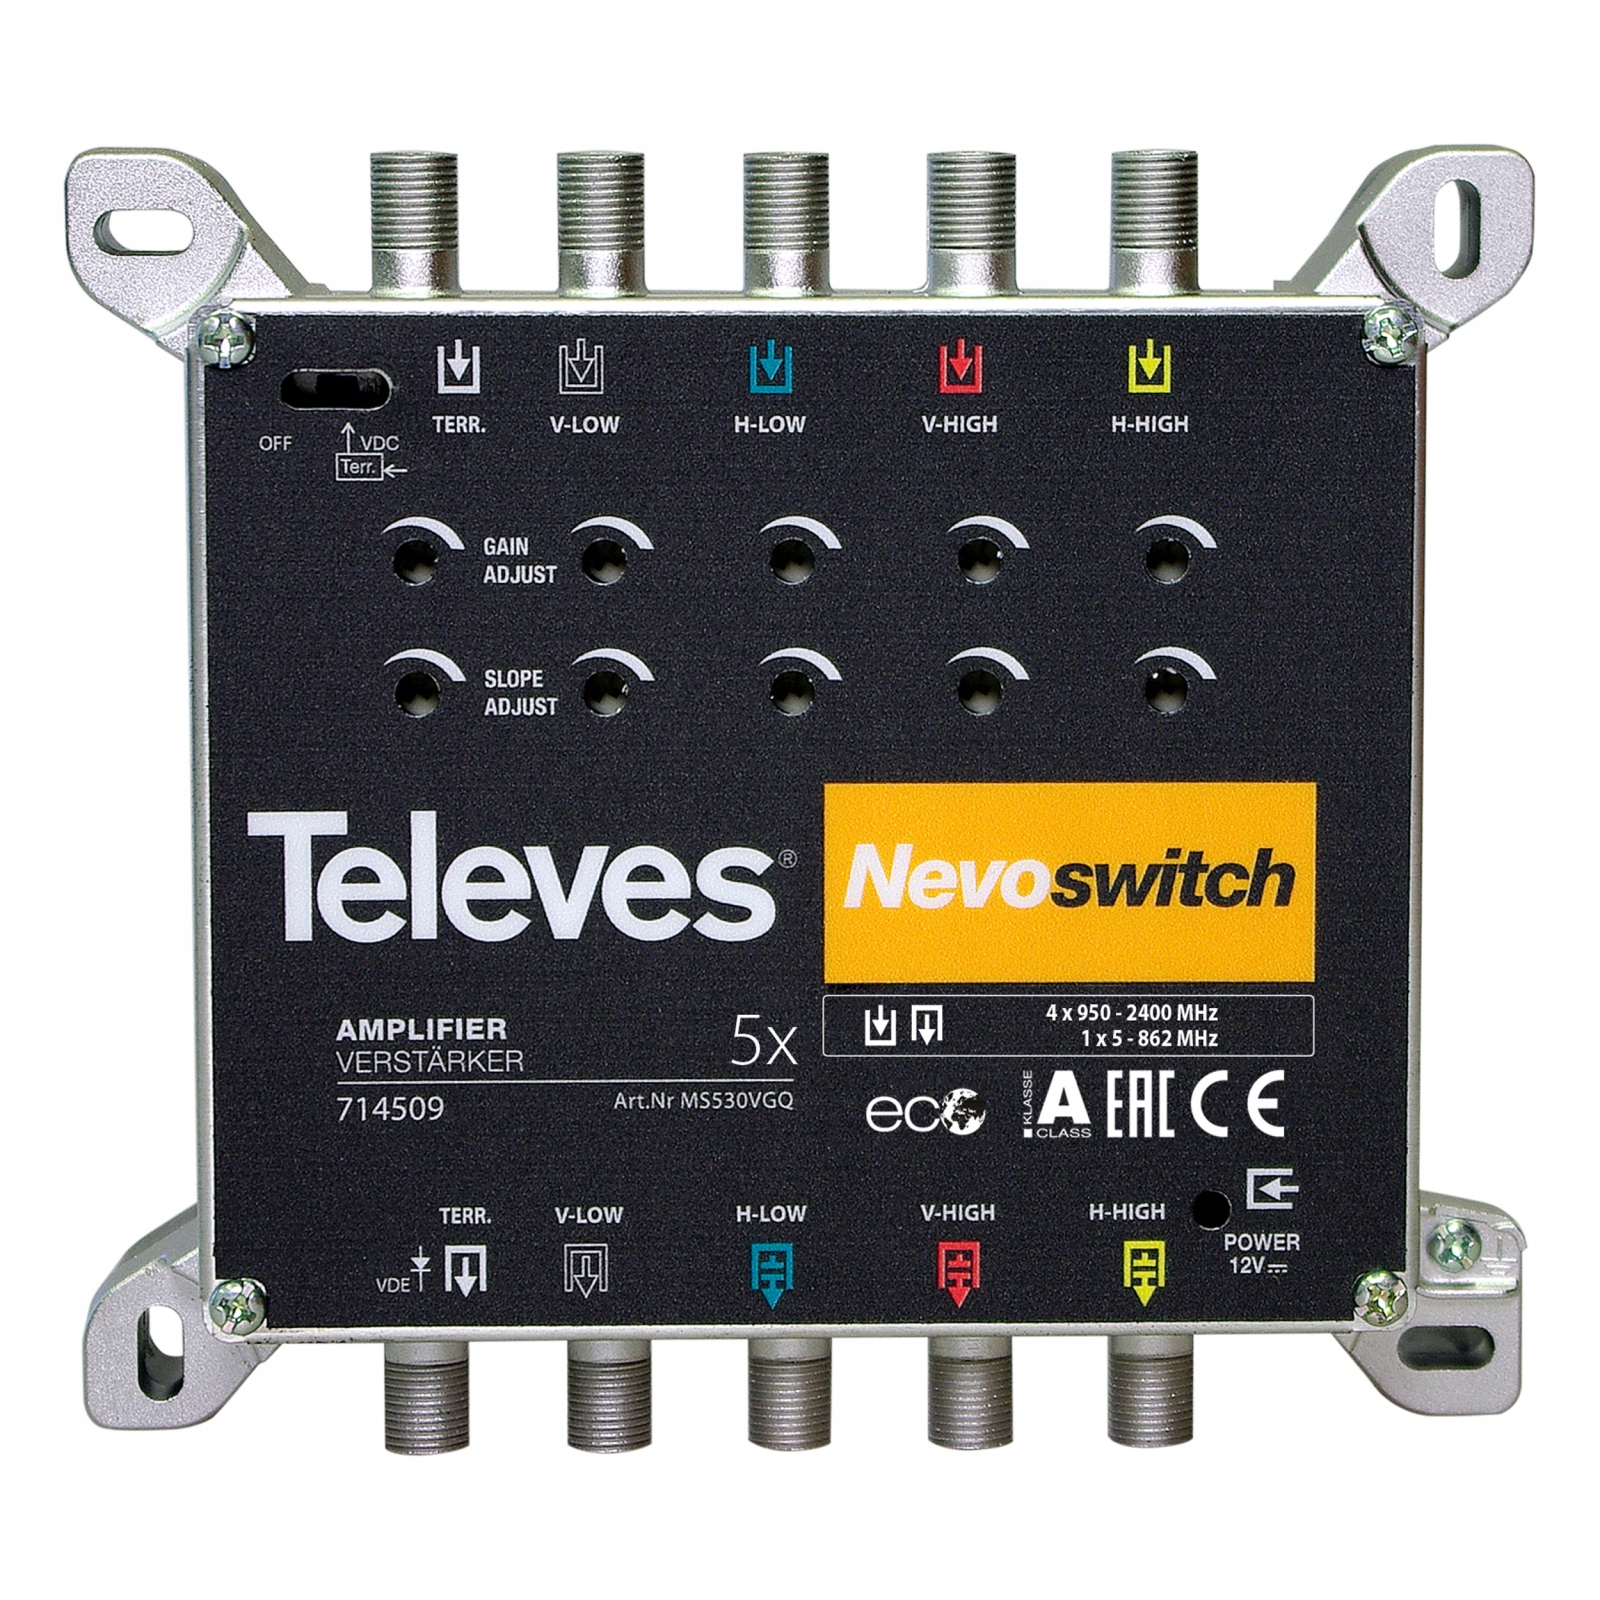 Wzmacniacz Nevoswitch 5/5 SAT DVB-T Televes 714509